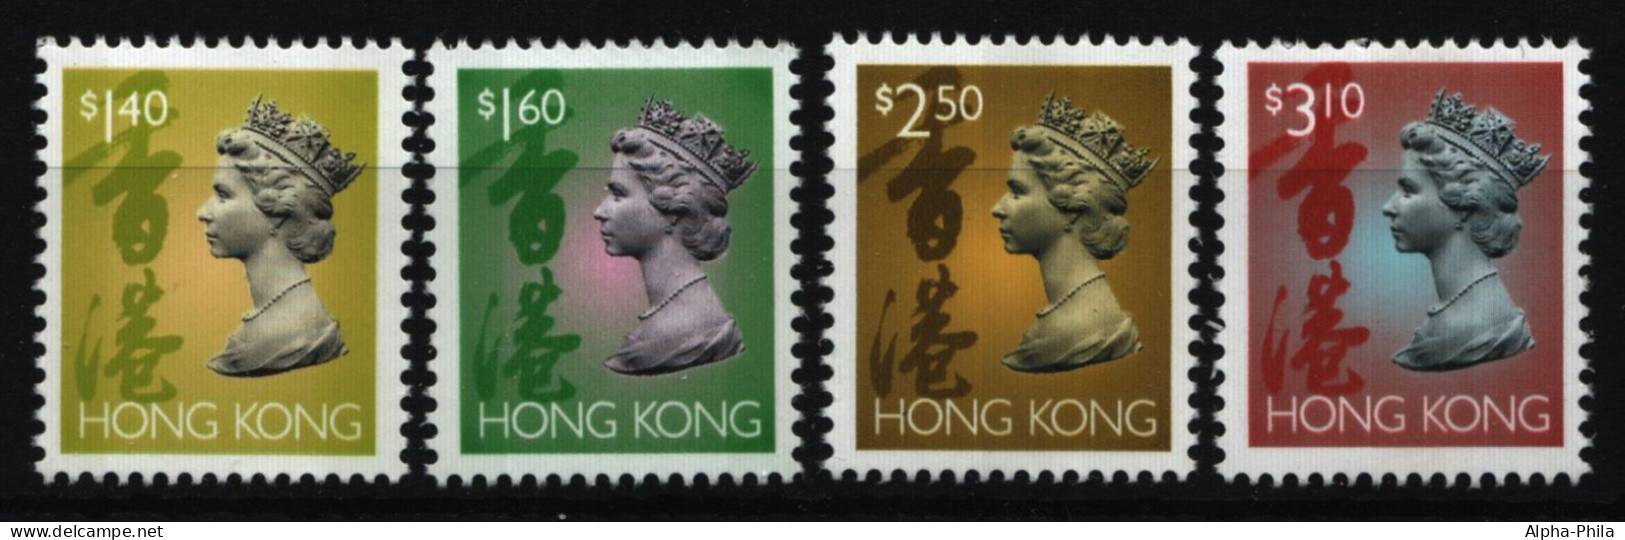 Hongkong 1996 - Mi-Nr. 771-774 I ** - MNH - Freimarken - Queen Elizabeth II - Ungebraucht